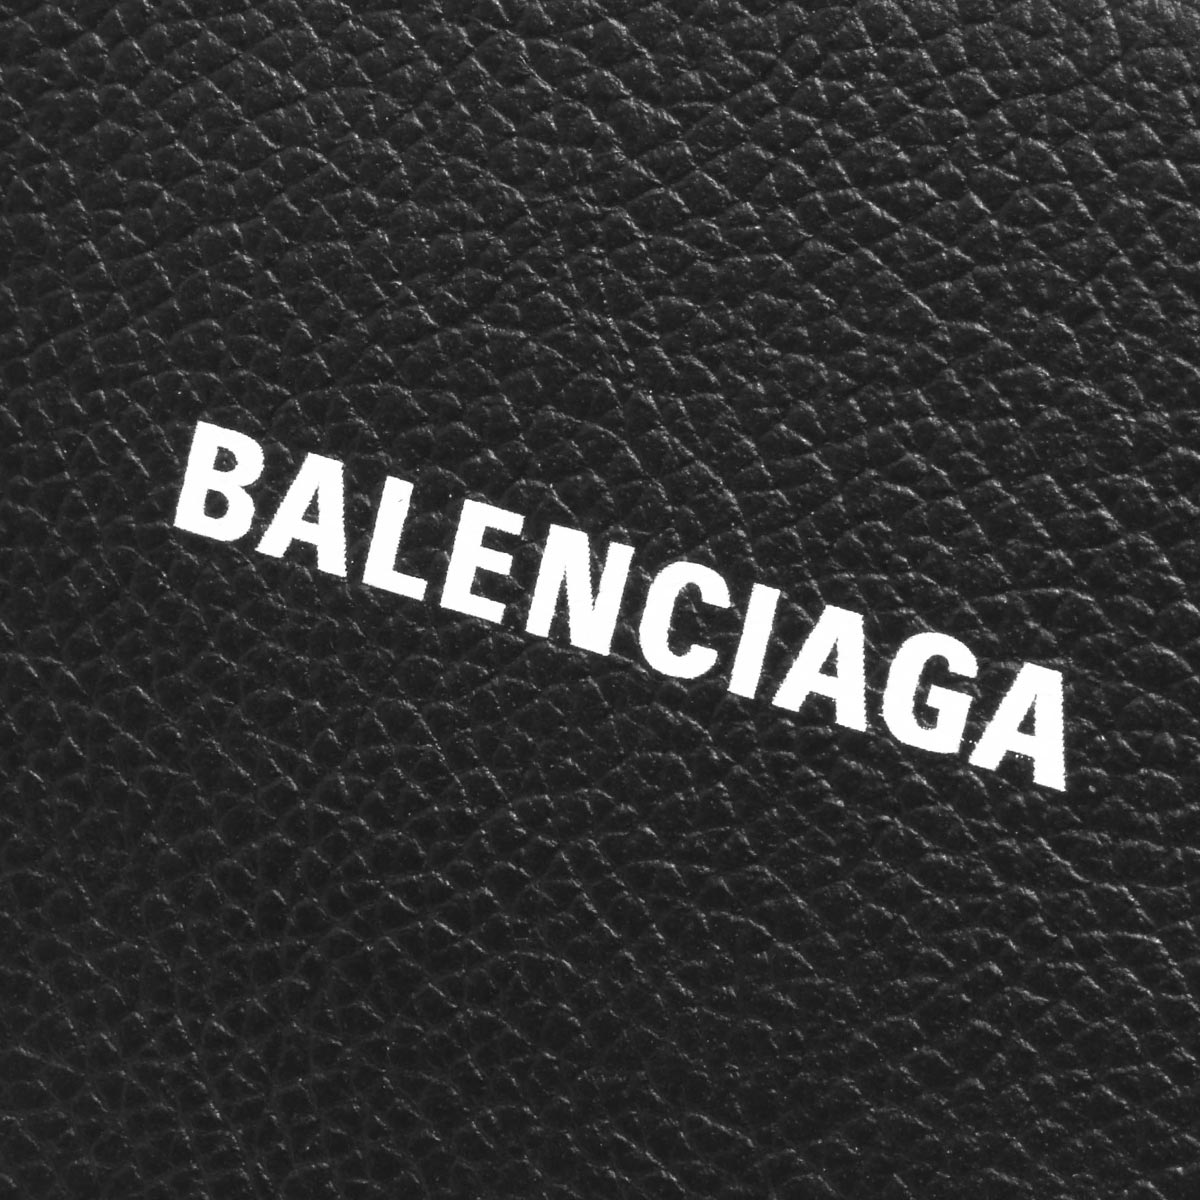 楽天市場 バレンシアガ 長財布 財布 メンズ レディース ヴィル ブラック ブランホワイト 5942 1iz4m 1090 Balenciaga ブルークウォッチカンパニー